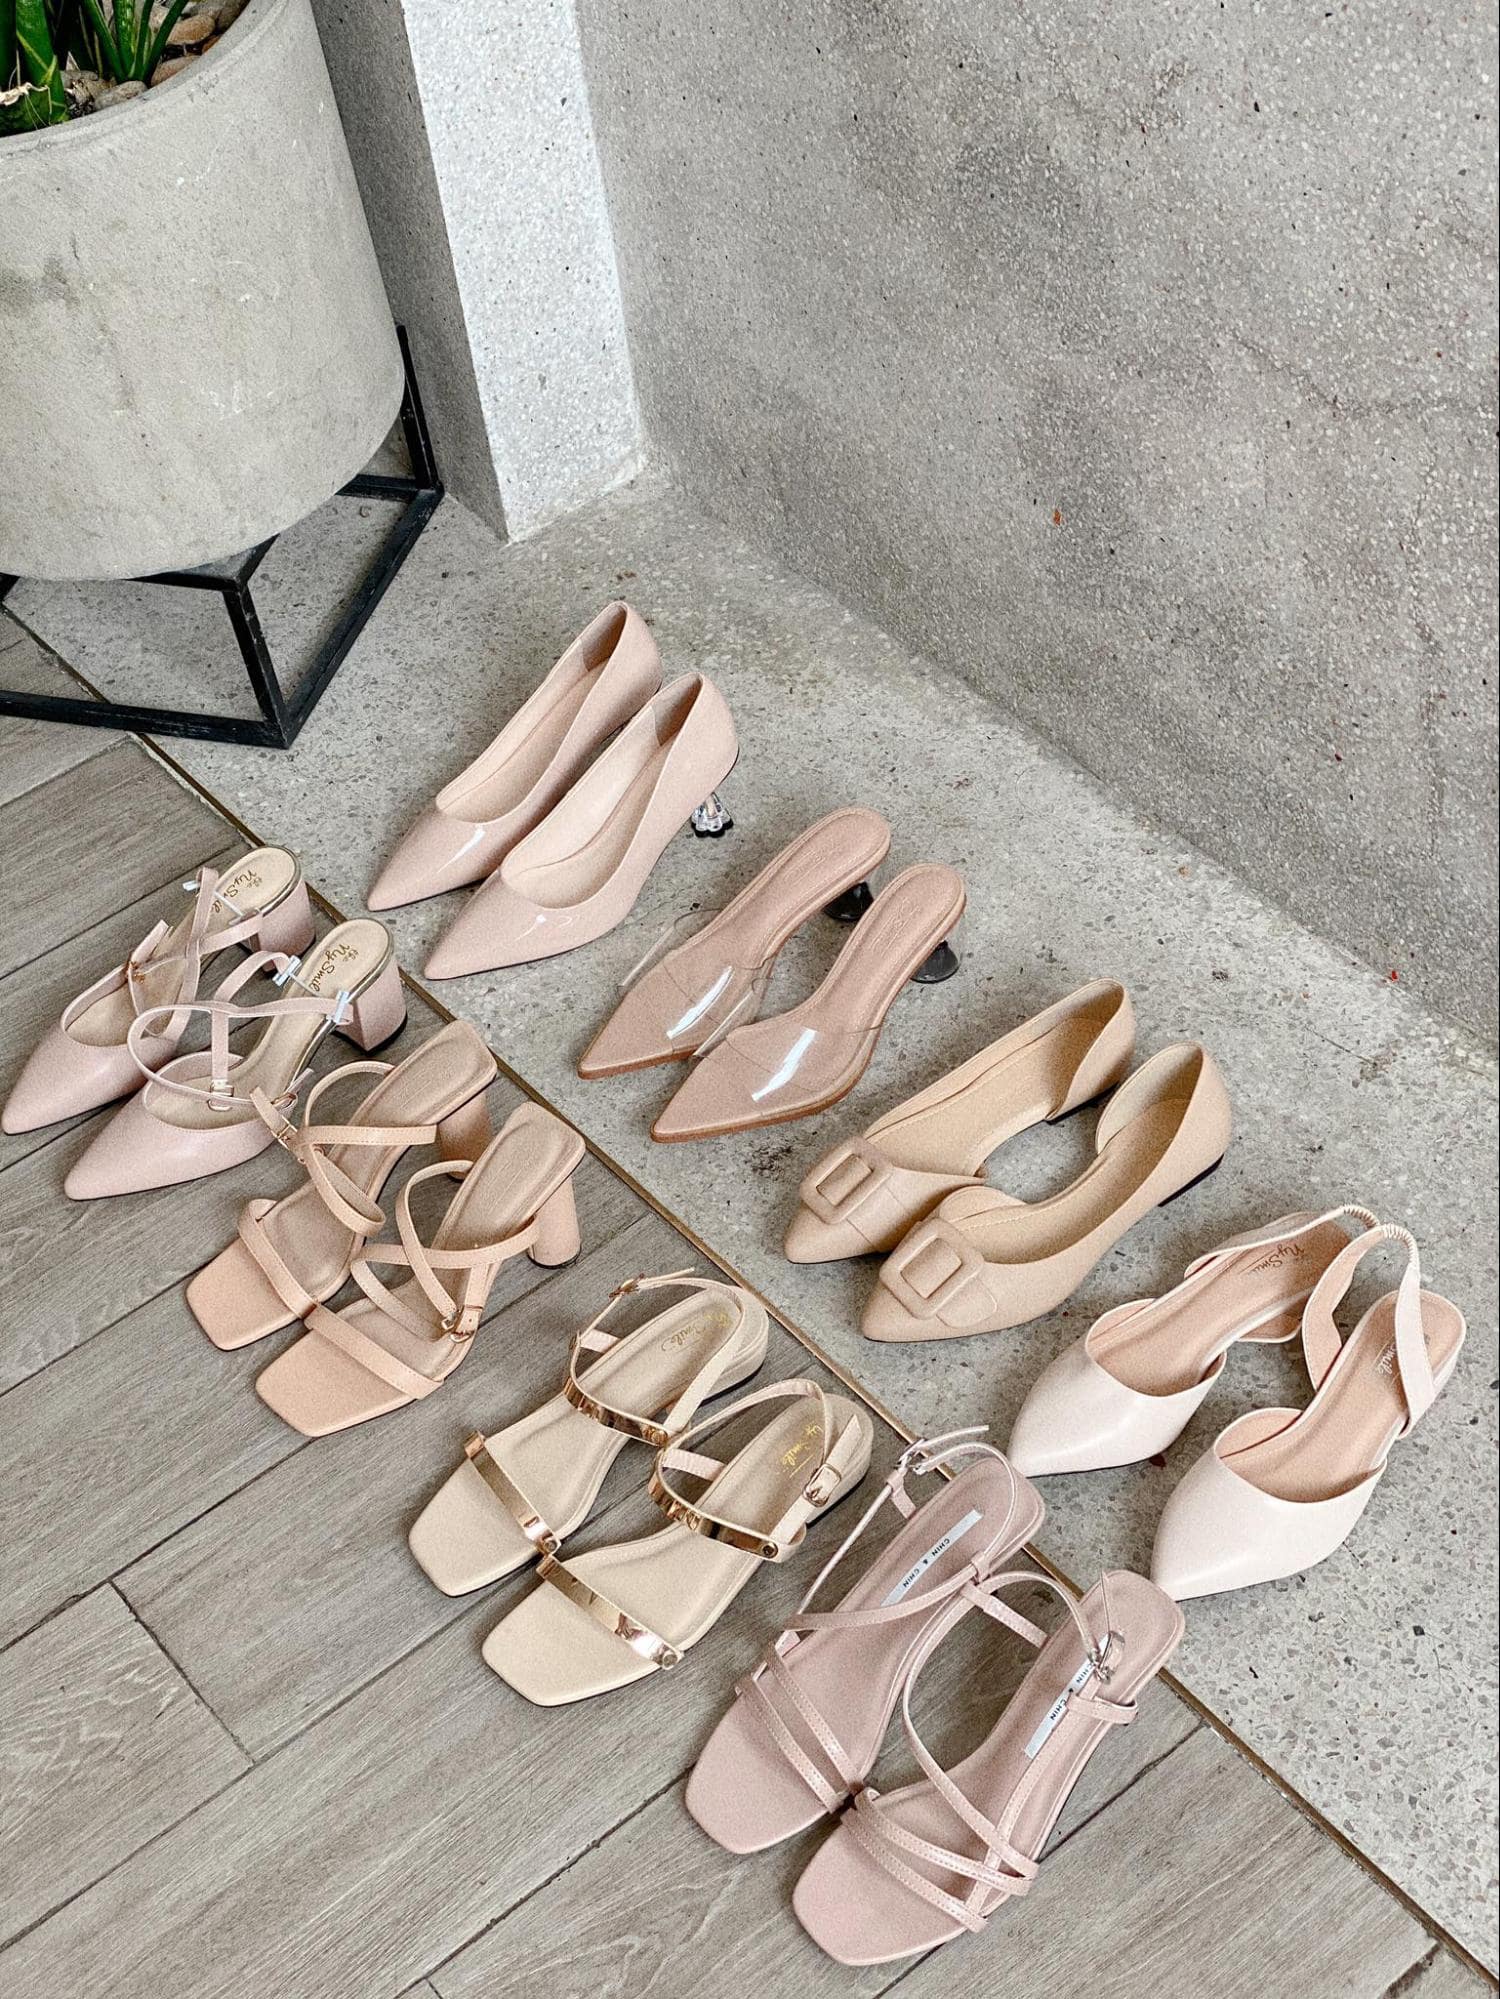 Shop Bán Giày Sandal Nữ Đẹp